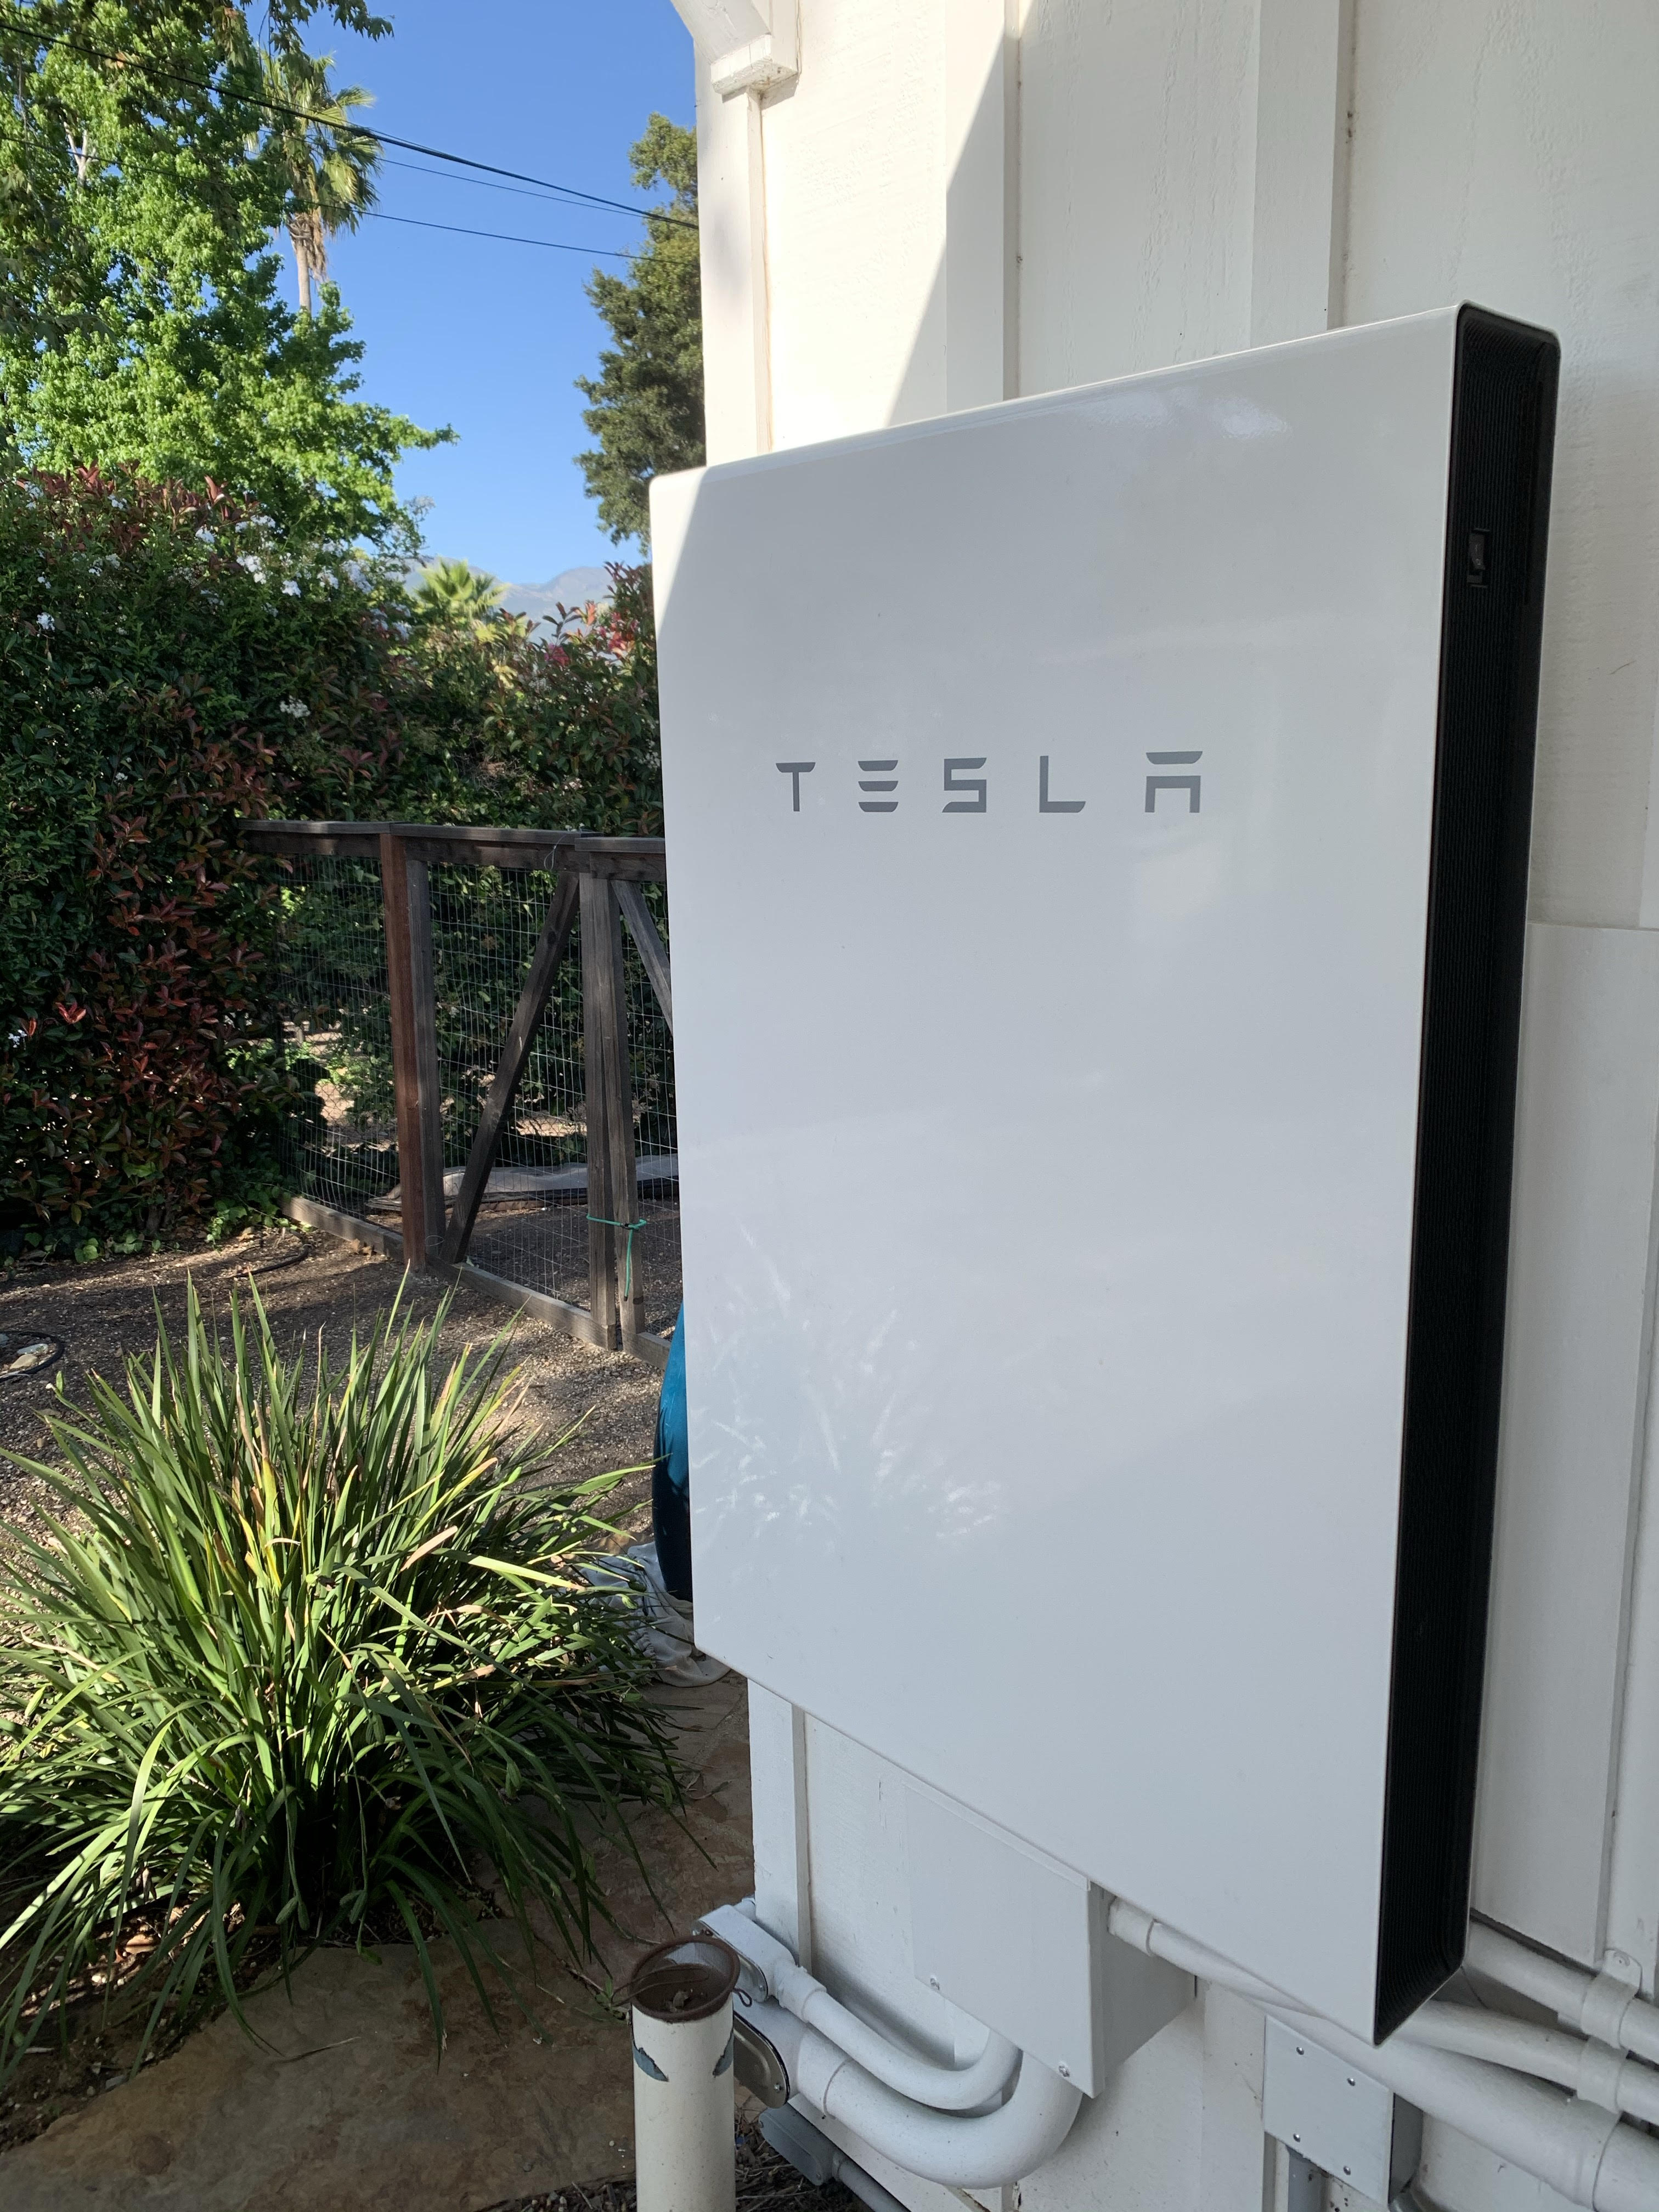 A Tesla home unit